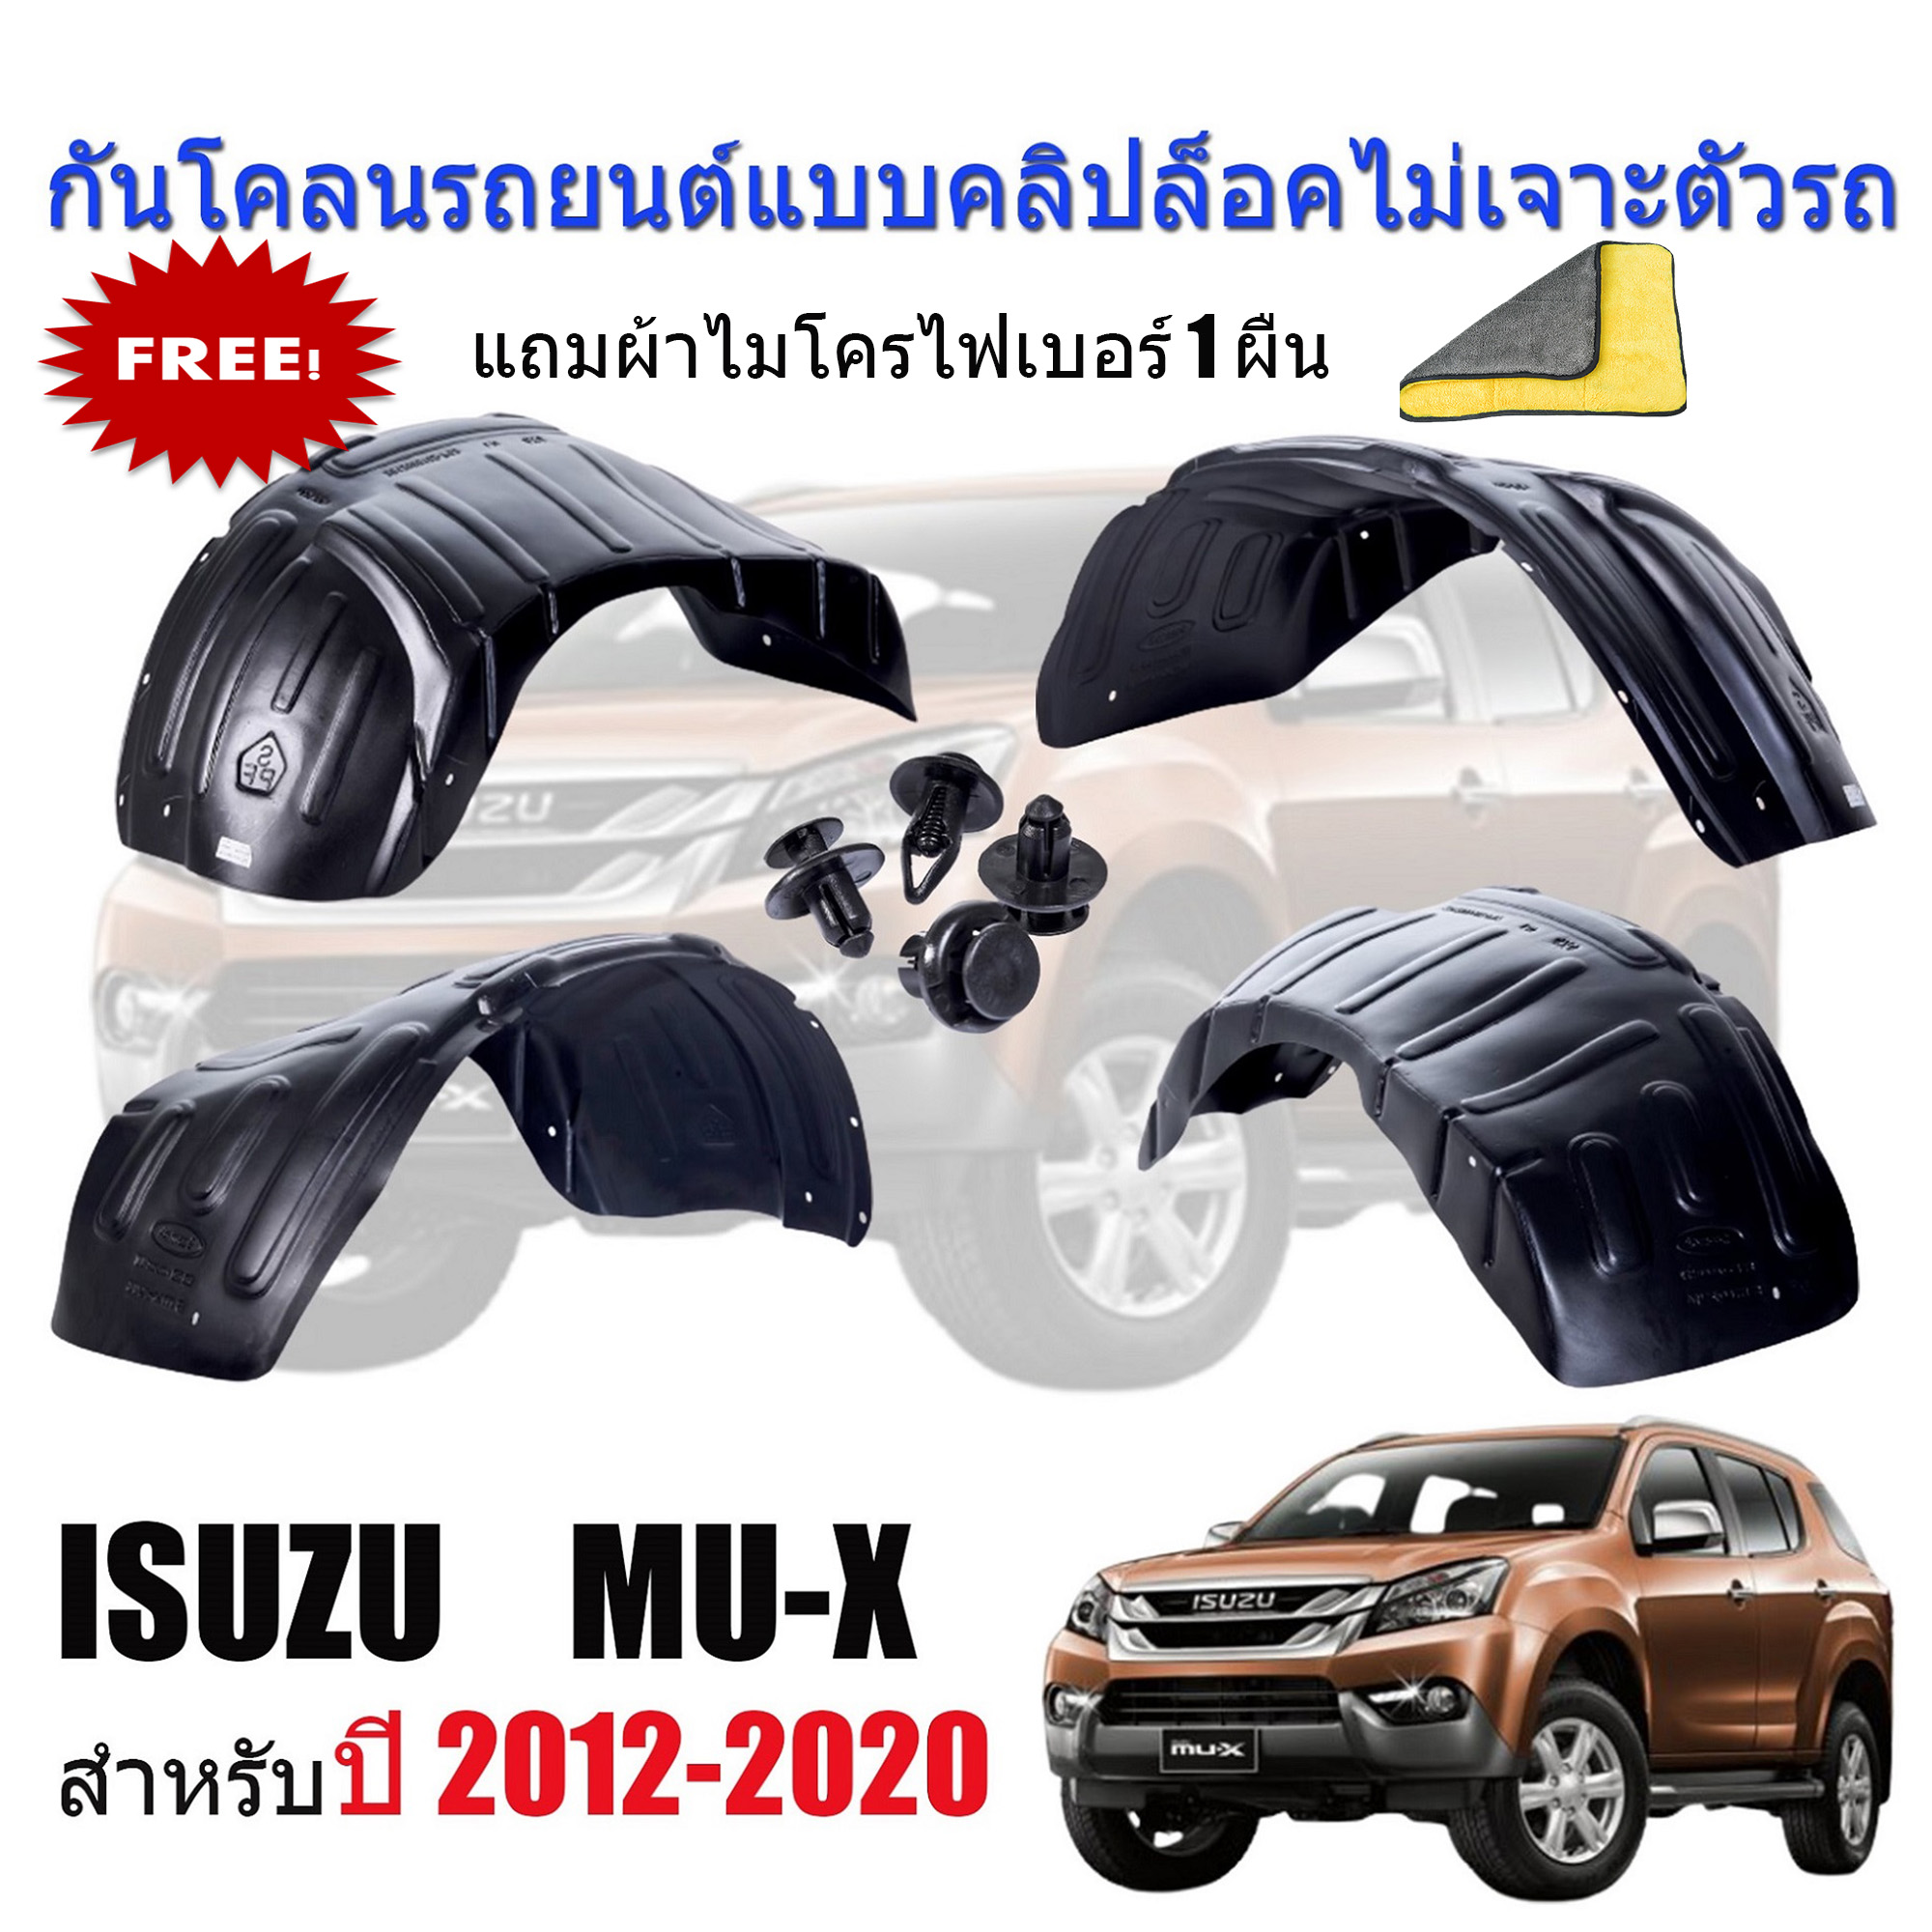 กันโคลนรถยนต์ ISUZU MU-X ปี 2012-2020 (แบบคลิ๊บล๊อคไม่ต้องเจาะตัวรถ)(ก่อนโฉมปัจจุบัน) กรุล้อ กันโคลน บังโคลนรถยนต์ ซุ้มล้อรถยนต์ ซุ้มล้อ บังโคลน